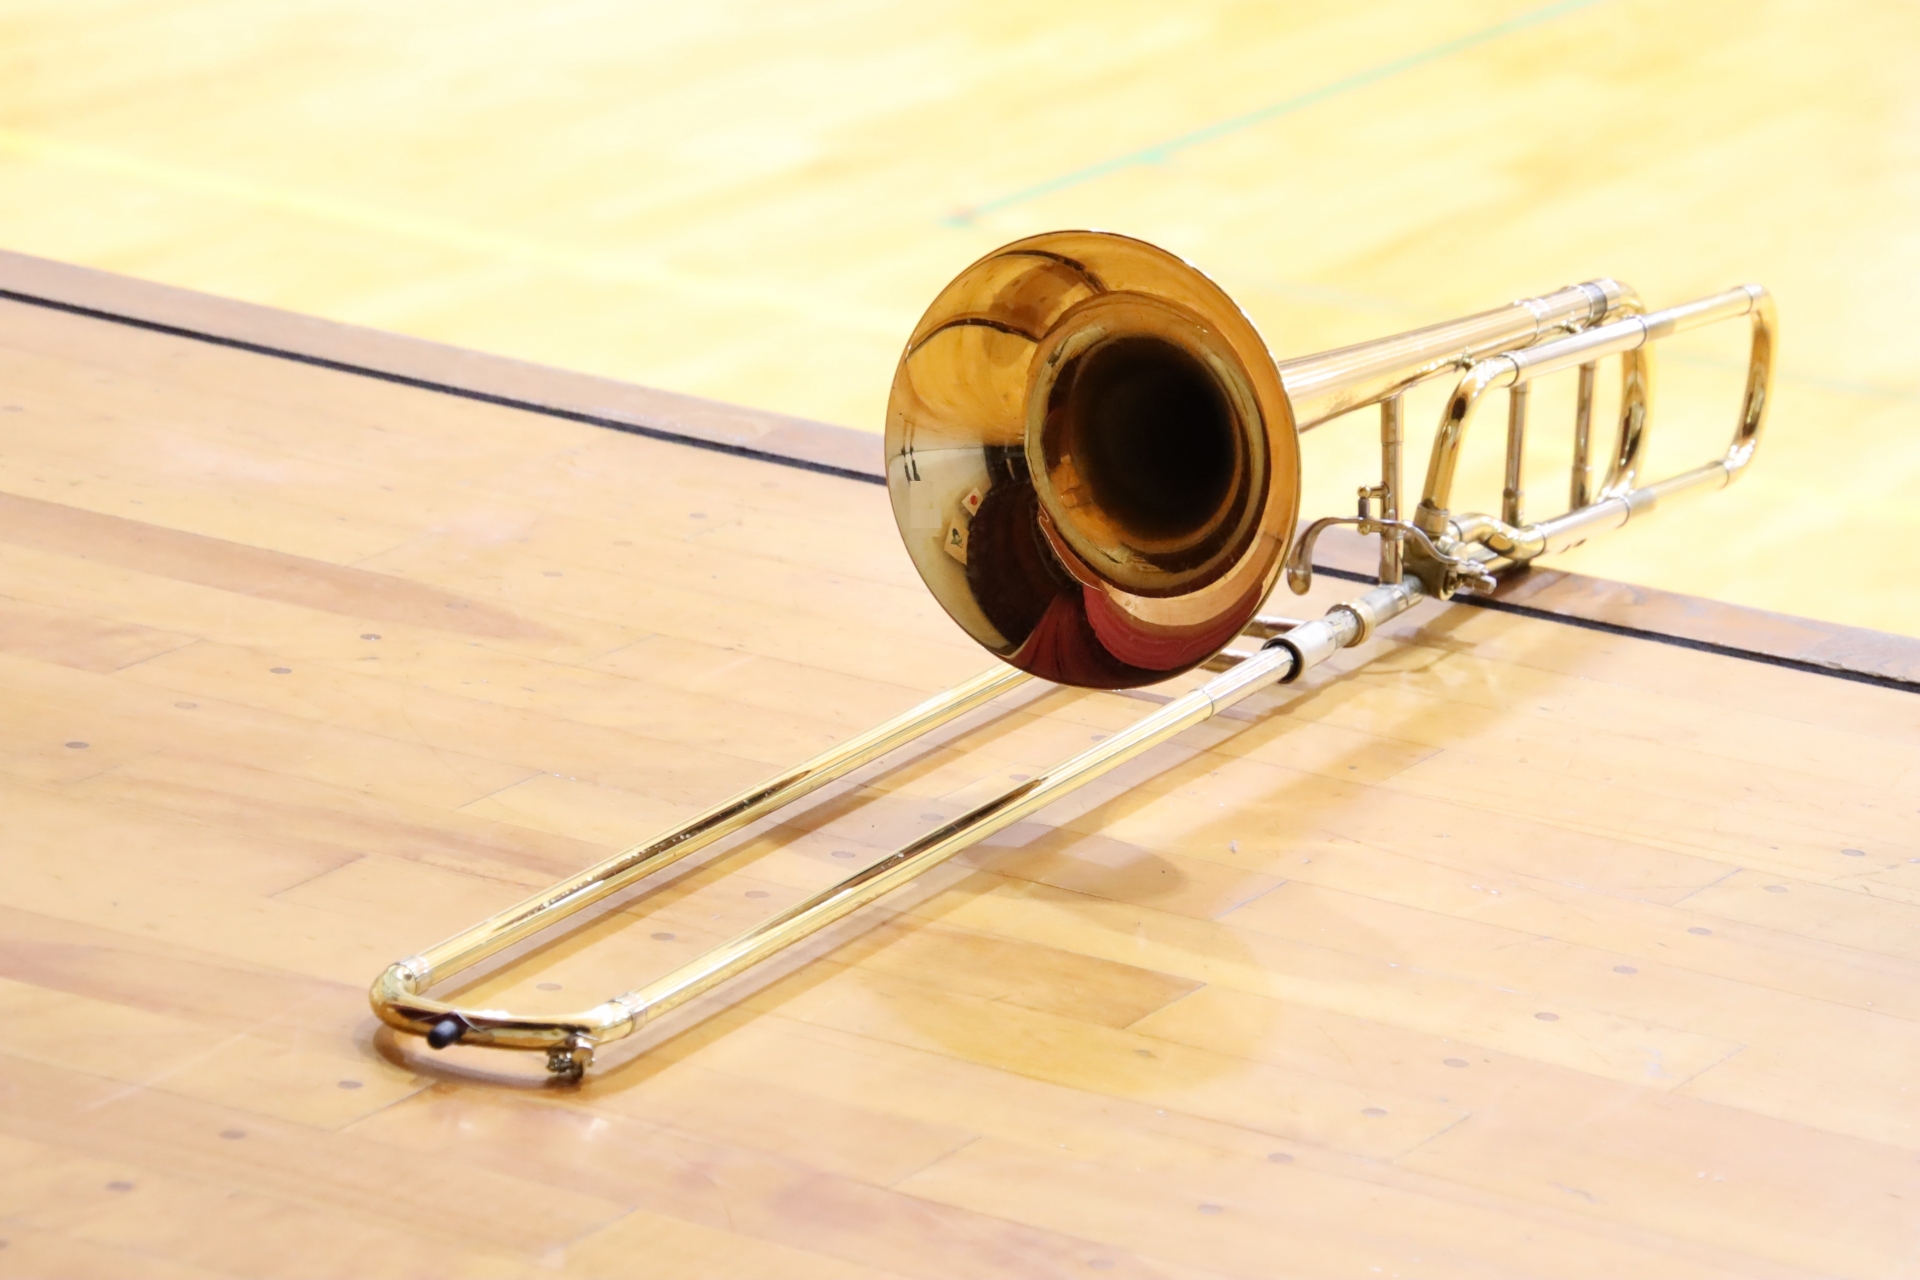 中学校の部活は吹奏楽部 マイ楽器は必要になるの ママ賃貸コラム ママのための賃貸情報サイト